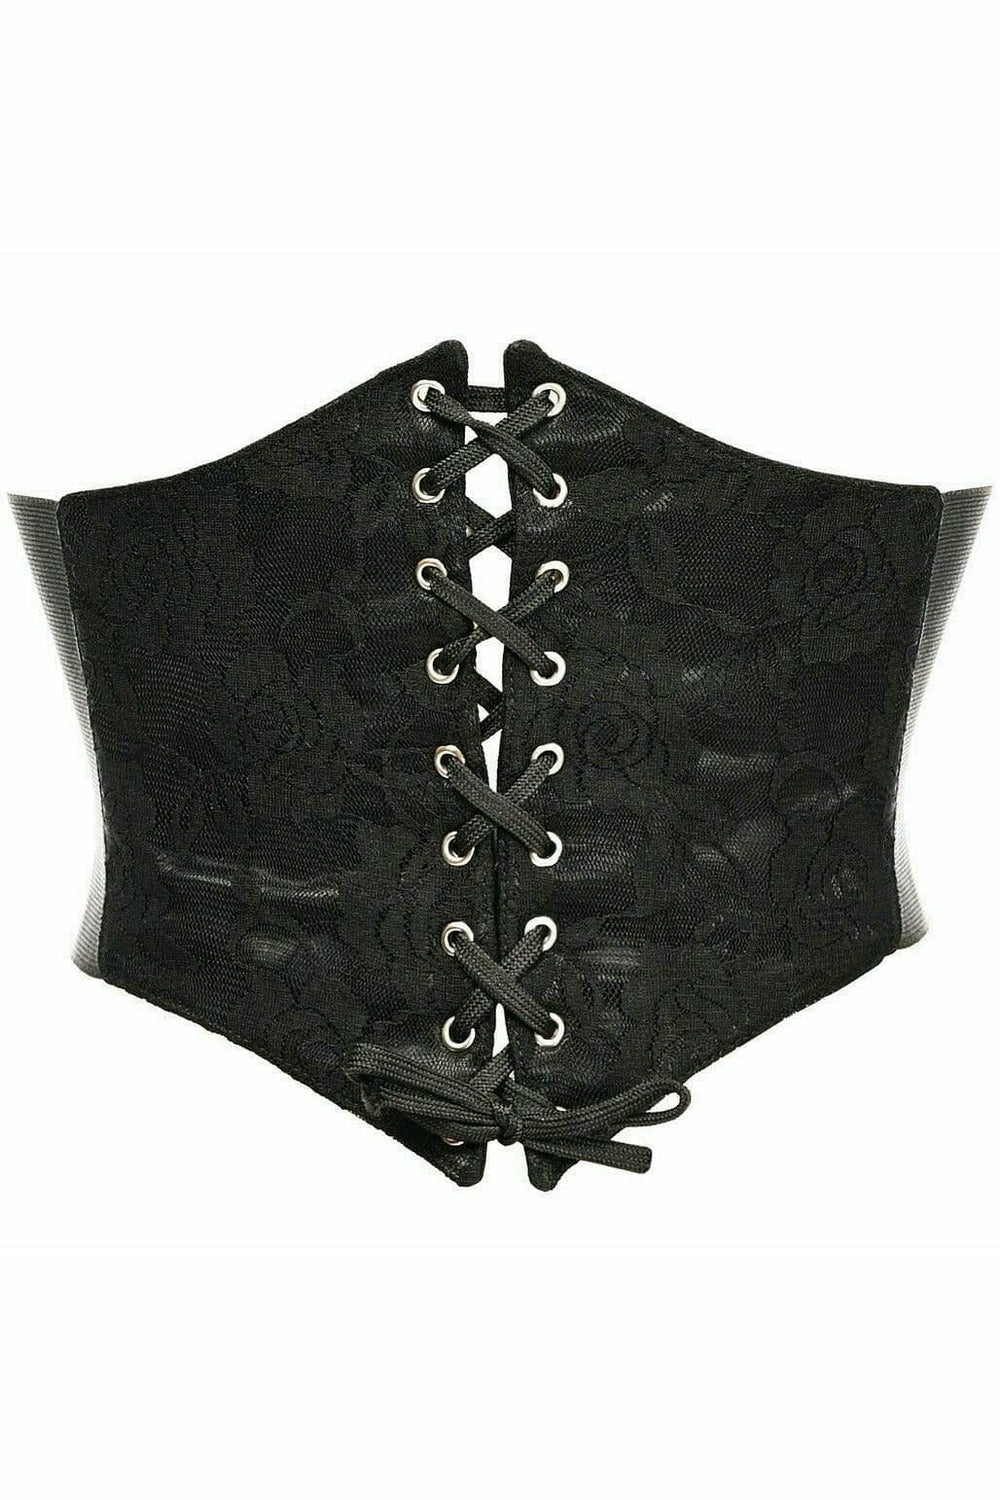 Lavish Black w/Black Lace Overlay Corset Belt Cincher-Corset Belts-Daisy Corsets-SEXYSHOES.COM